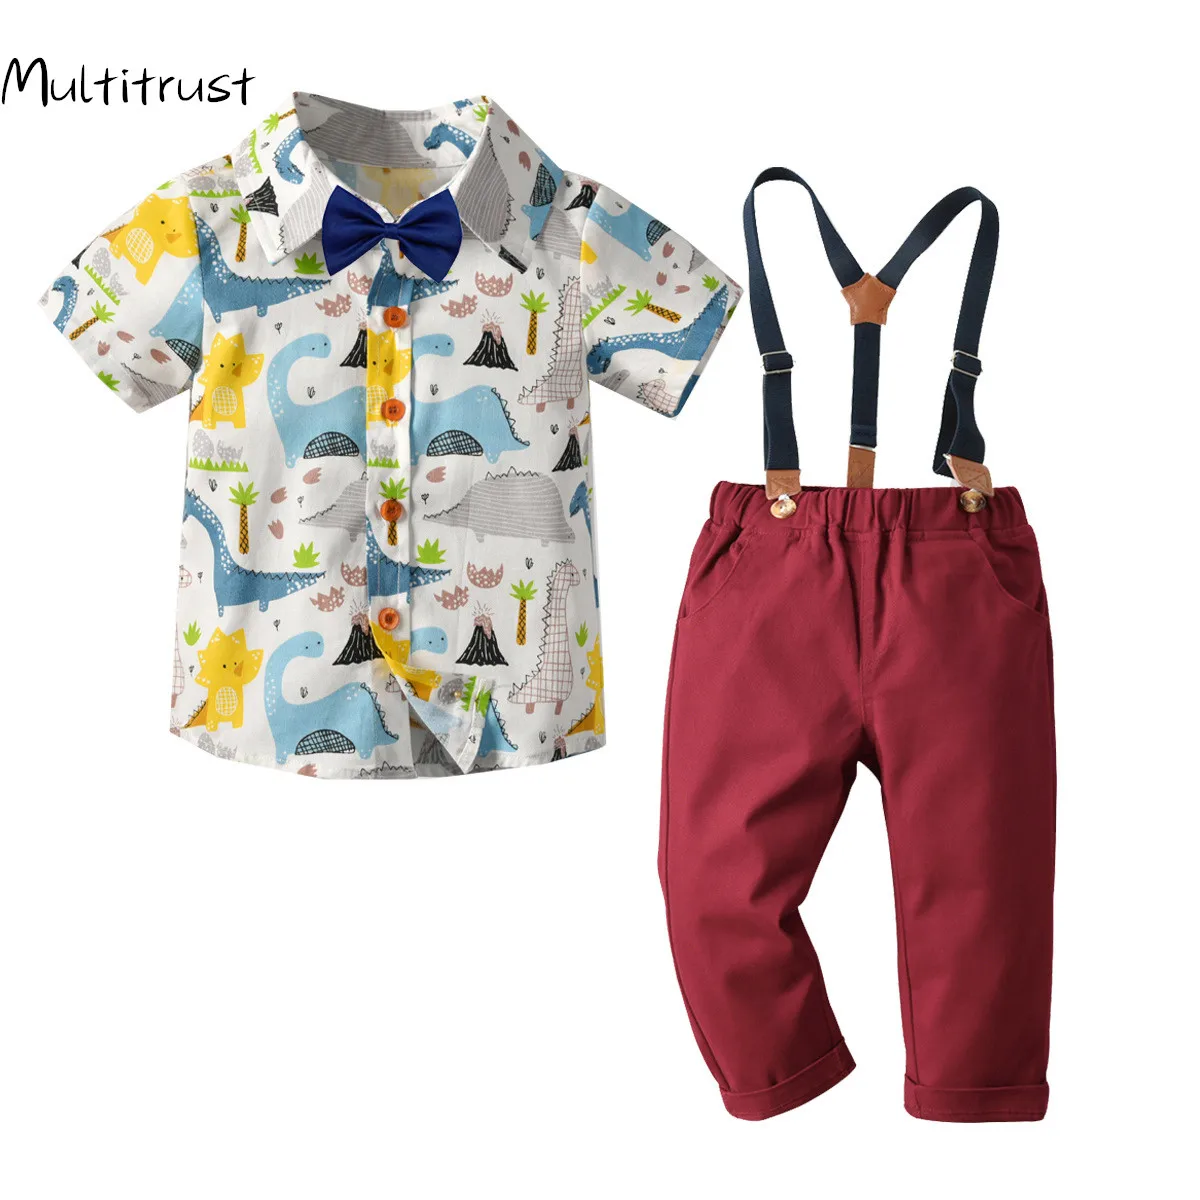 

2020 Autumn Toddler Boys Clothes Set Dinosaur Print Shirt + Suspender Pants 2pcs Gentleman Summer Outfit Suits 1-6Y